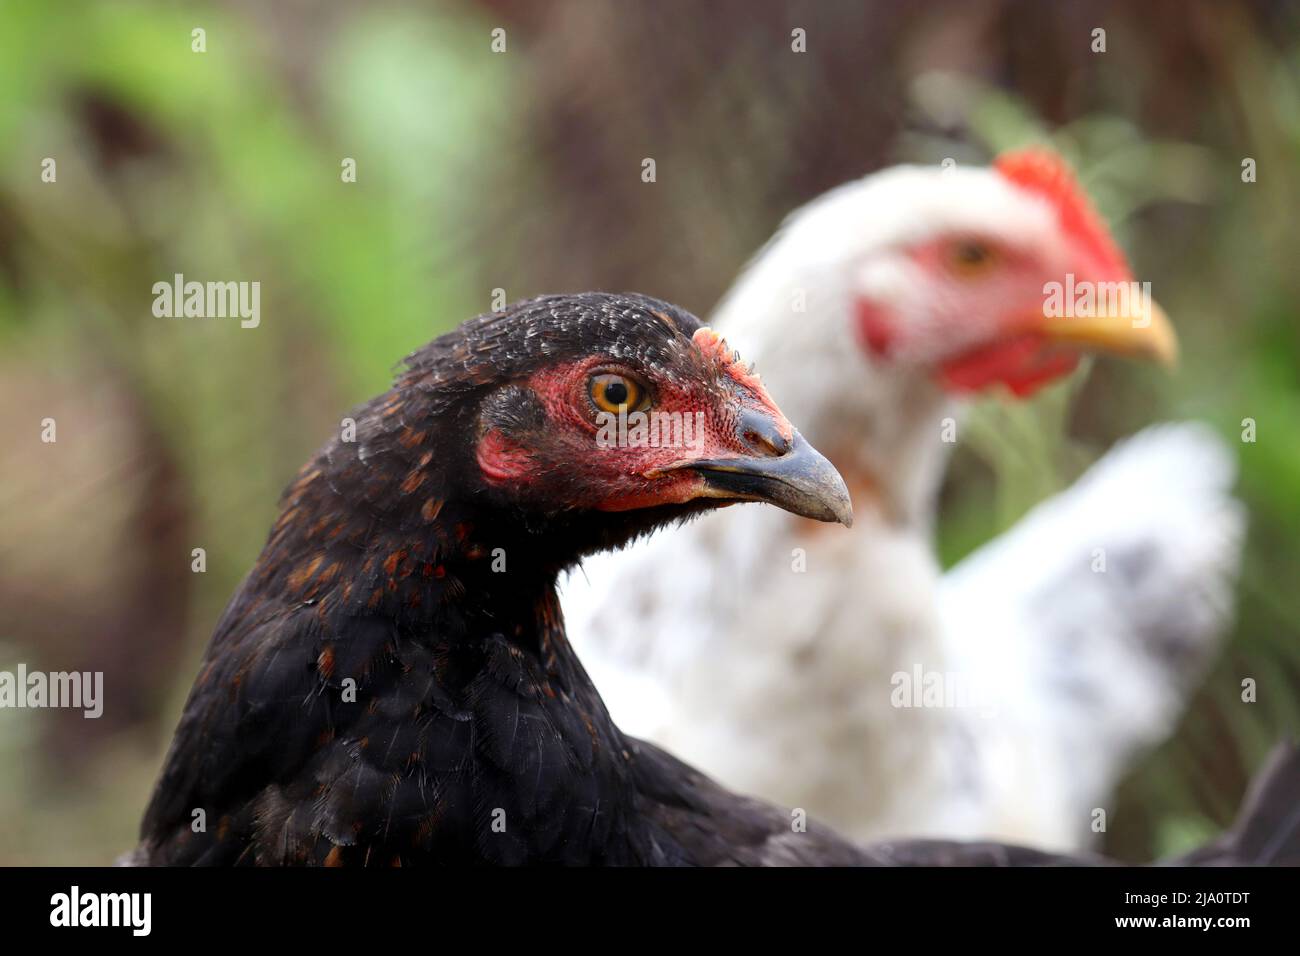 Polli in una fattoria, galline bianche e nere, concetto di pollame Foto Stock